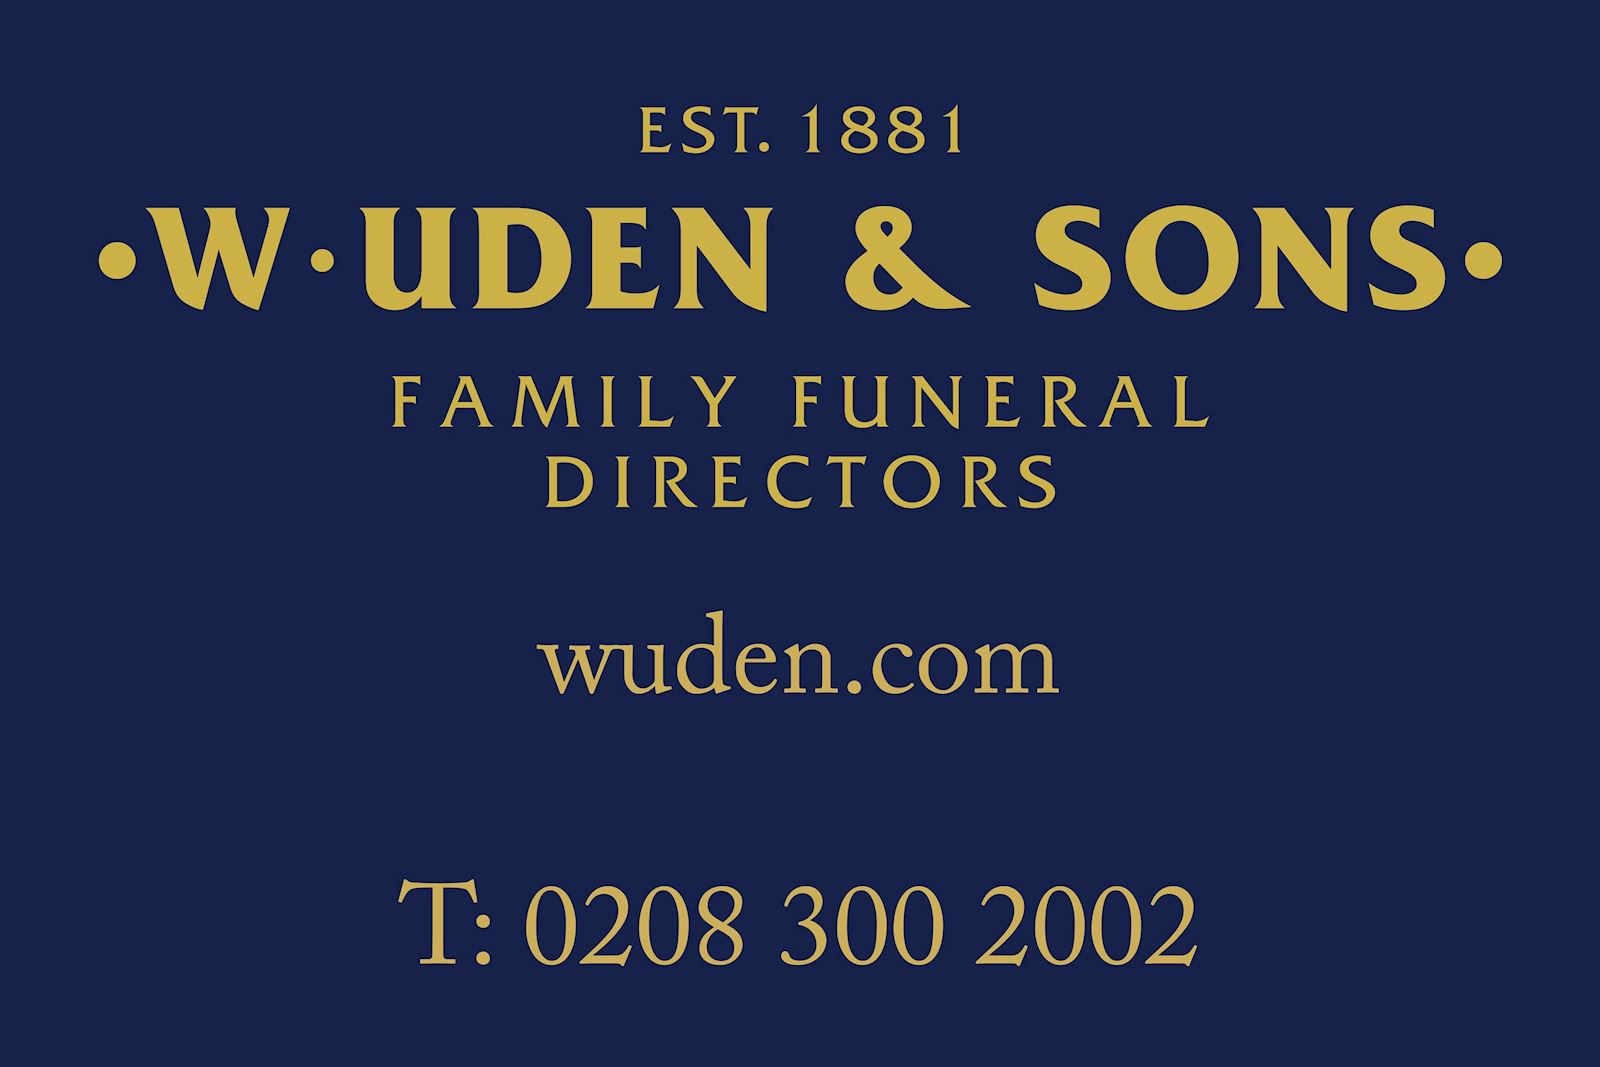 W.UDEN & SON